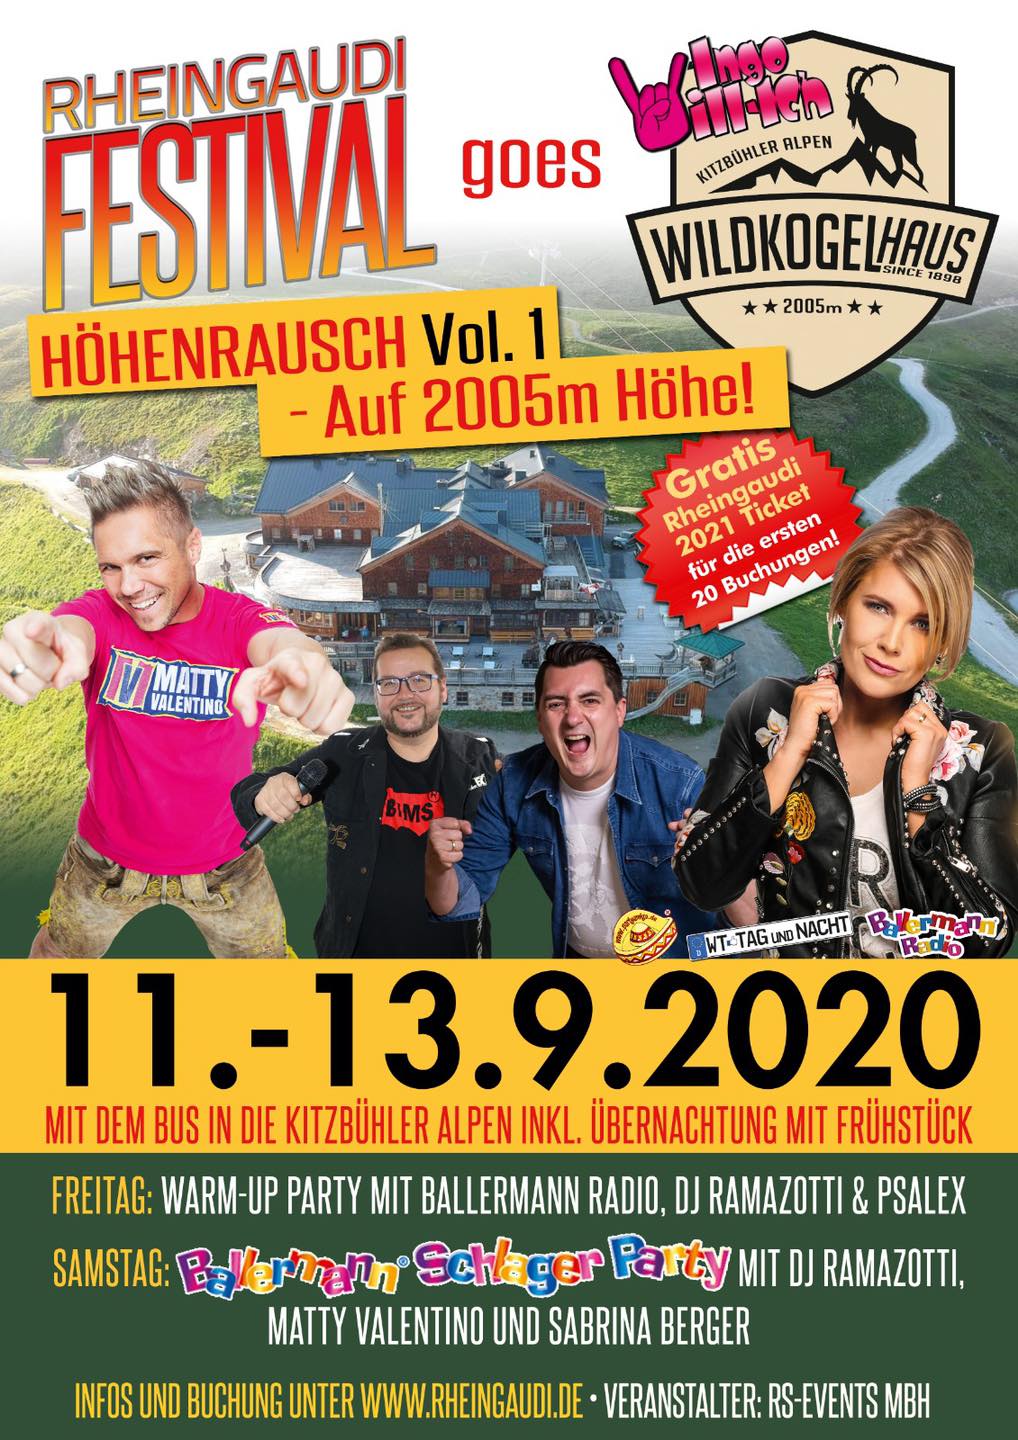 Kitzbühler Alpen: Gigantisches Rheingaudi-Festival auf 2005 Metern Höhe